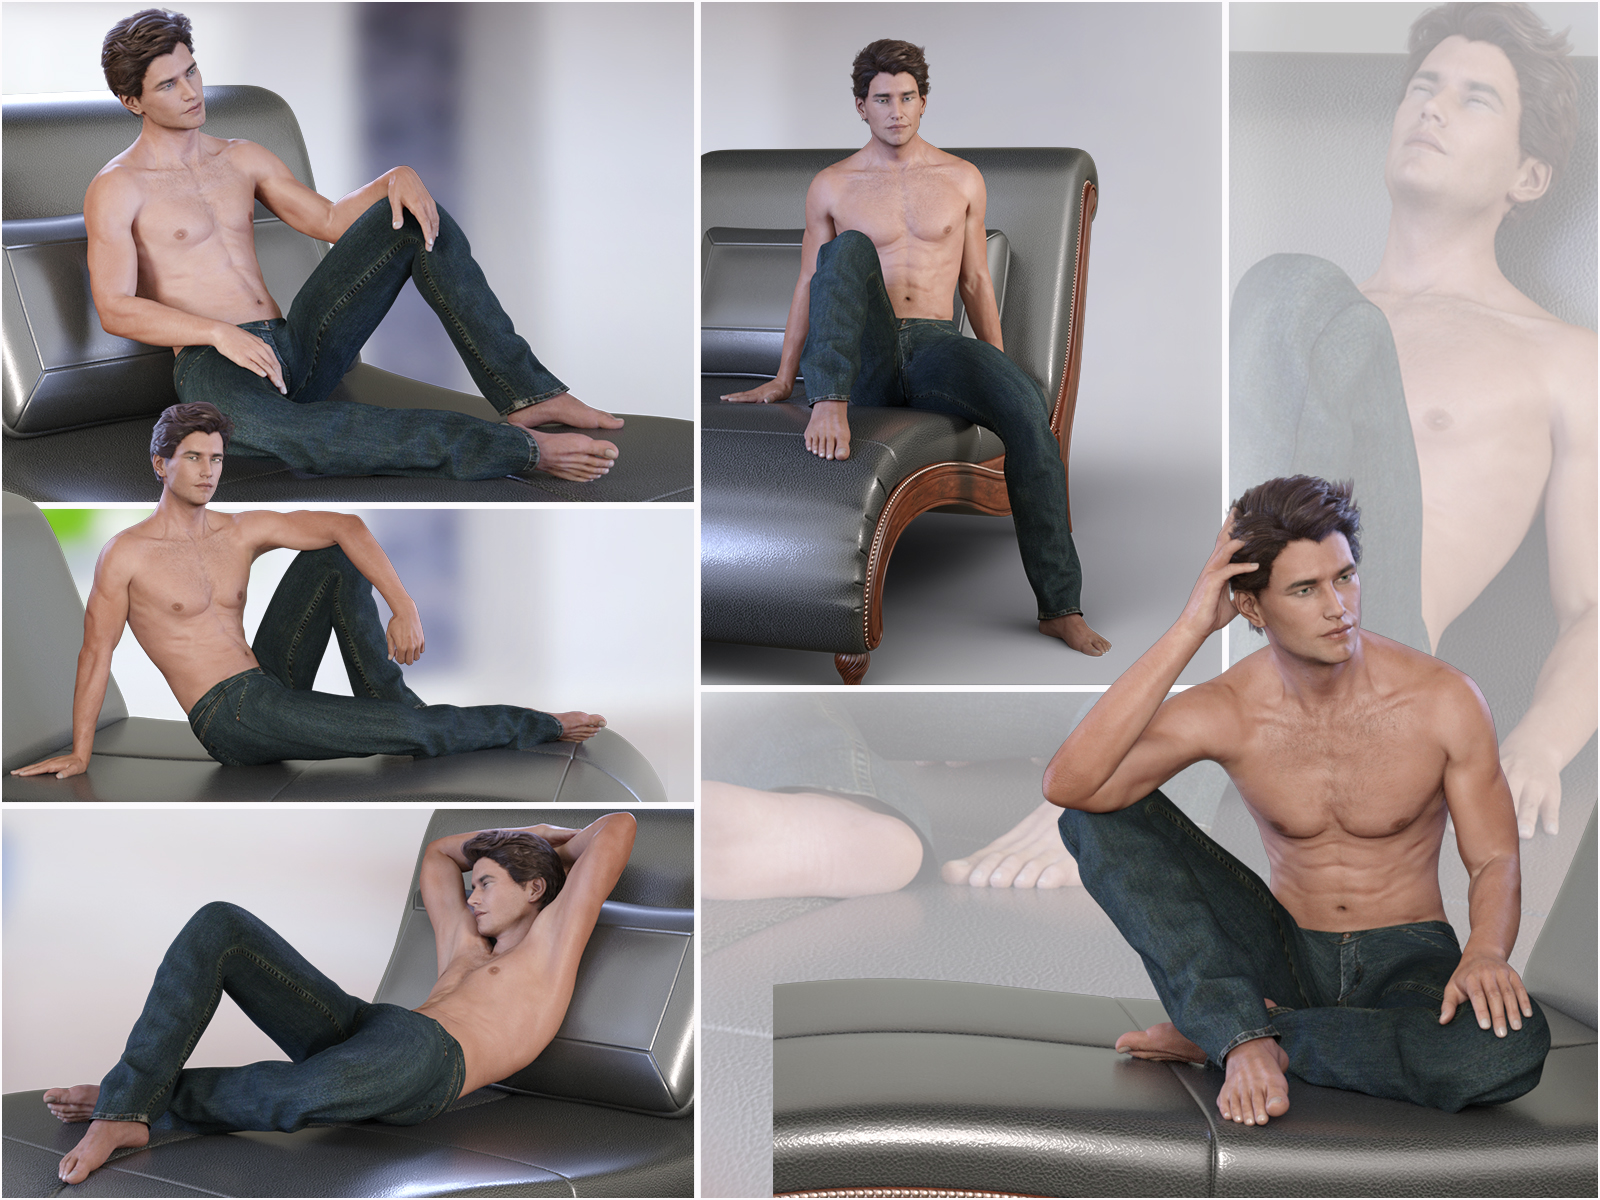 Z Chaise Lounge - Prop & Pose Collection by: Zeddicuss, 3D Models by Daz 3D